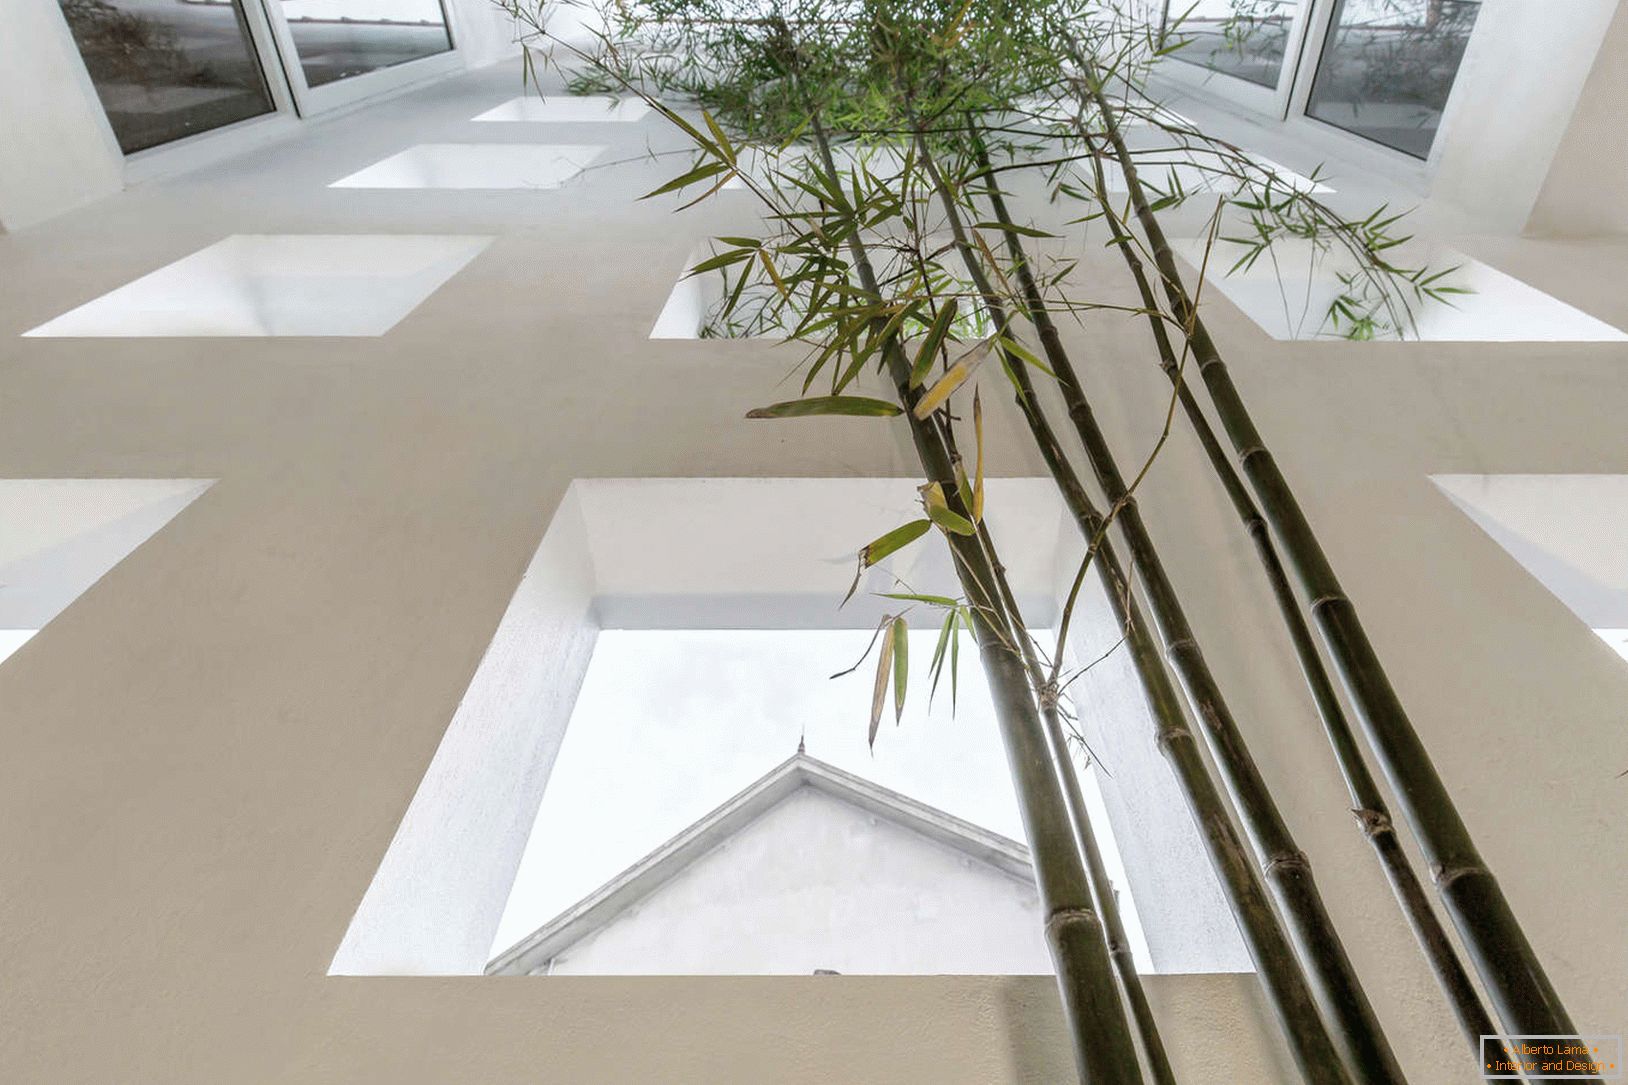 Bamboo in a narrow concrete house